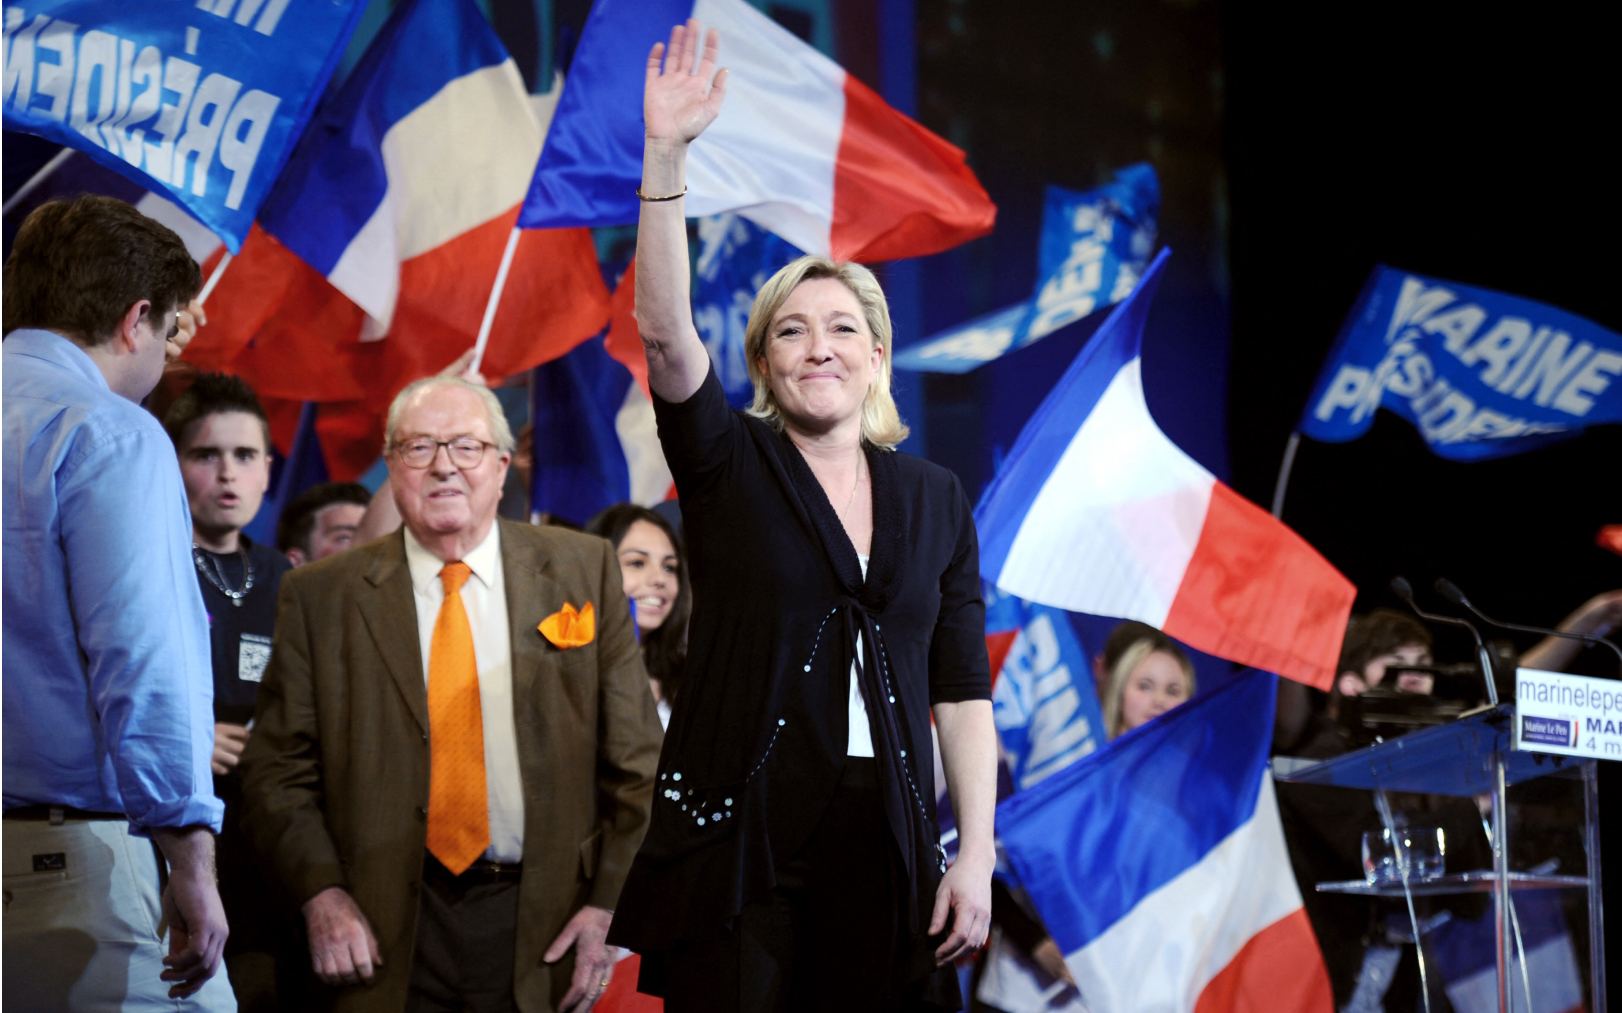 Marine Le Pen et son père, le cofondateur du RN, Jean-Marie Le Pen lors d’un meeting en mars 2012, six ans avant que le Front national ne devienne le Rassemblement national. AFP/Martin Bureau